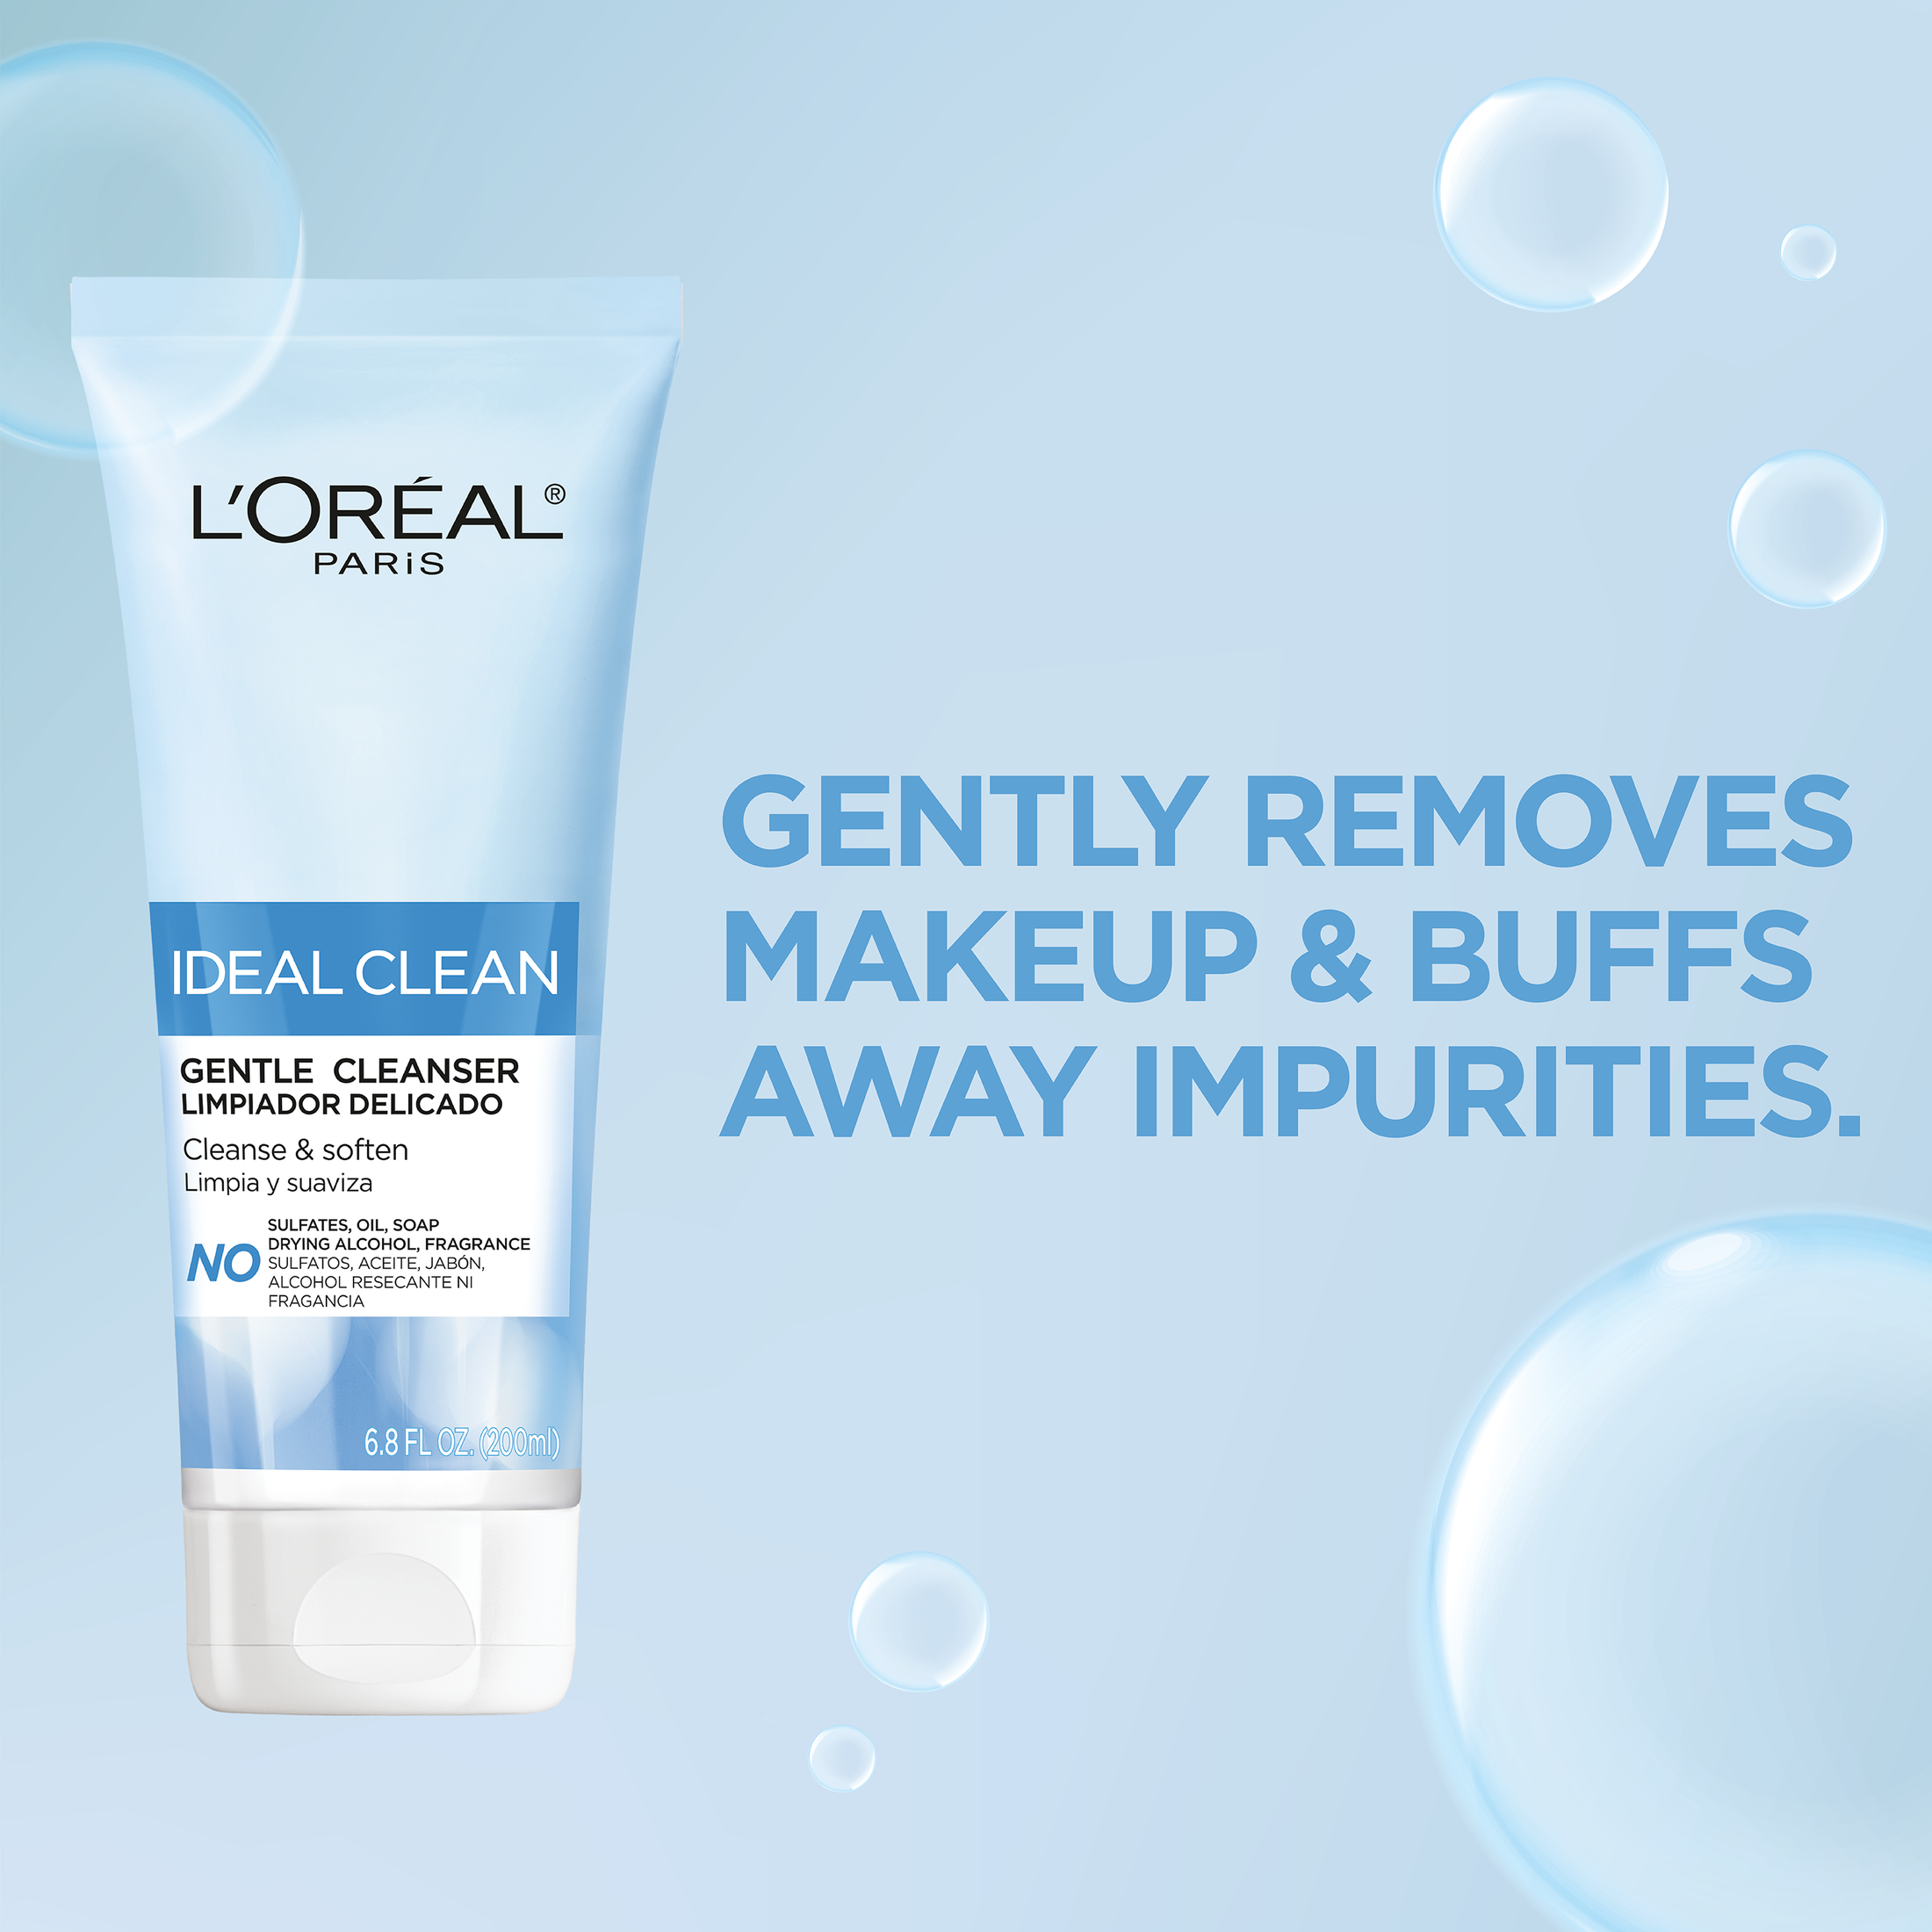 L'Oreal Paris Ideal Clean Gentle Facial Cleanser, 6.8 fl oz | MTTS396